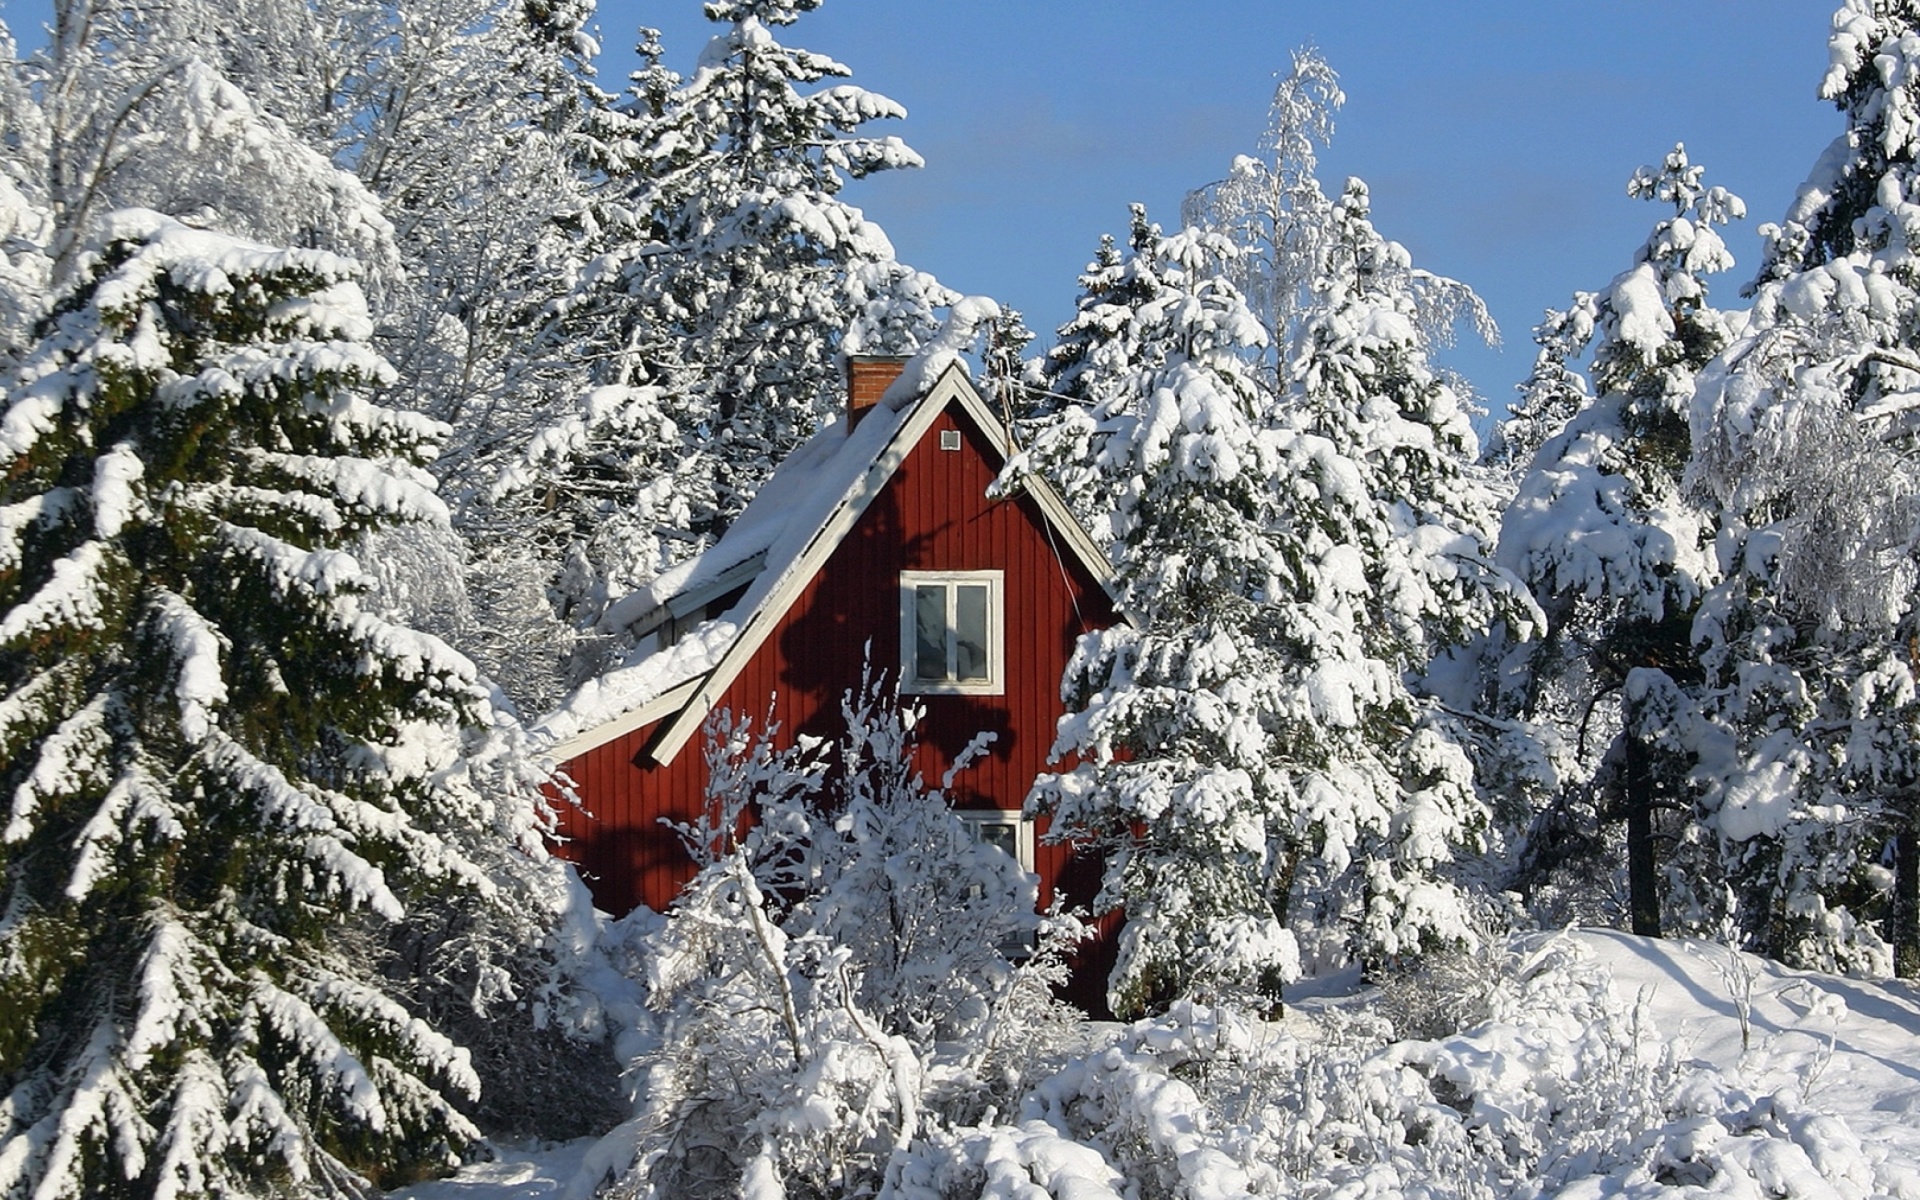 Обои Winter in Sweden 1920x1200